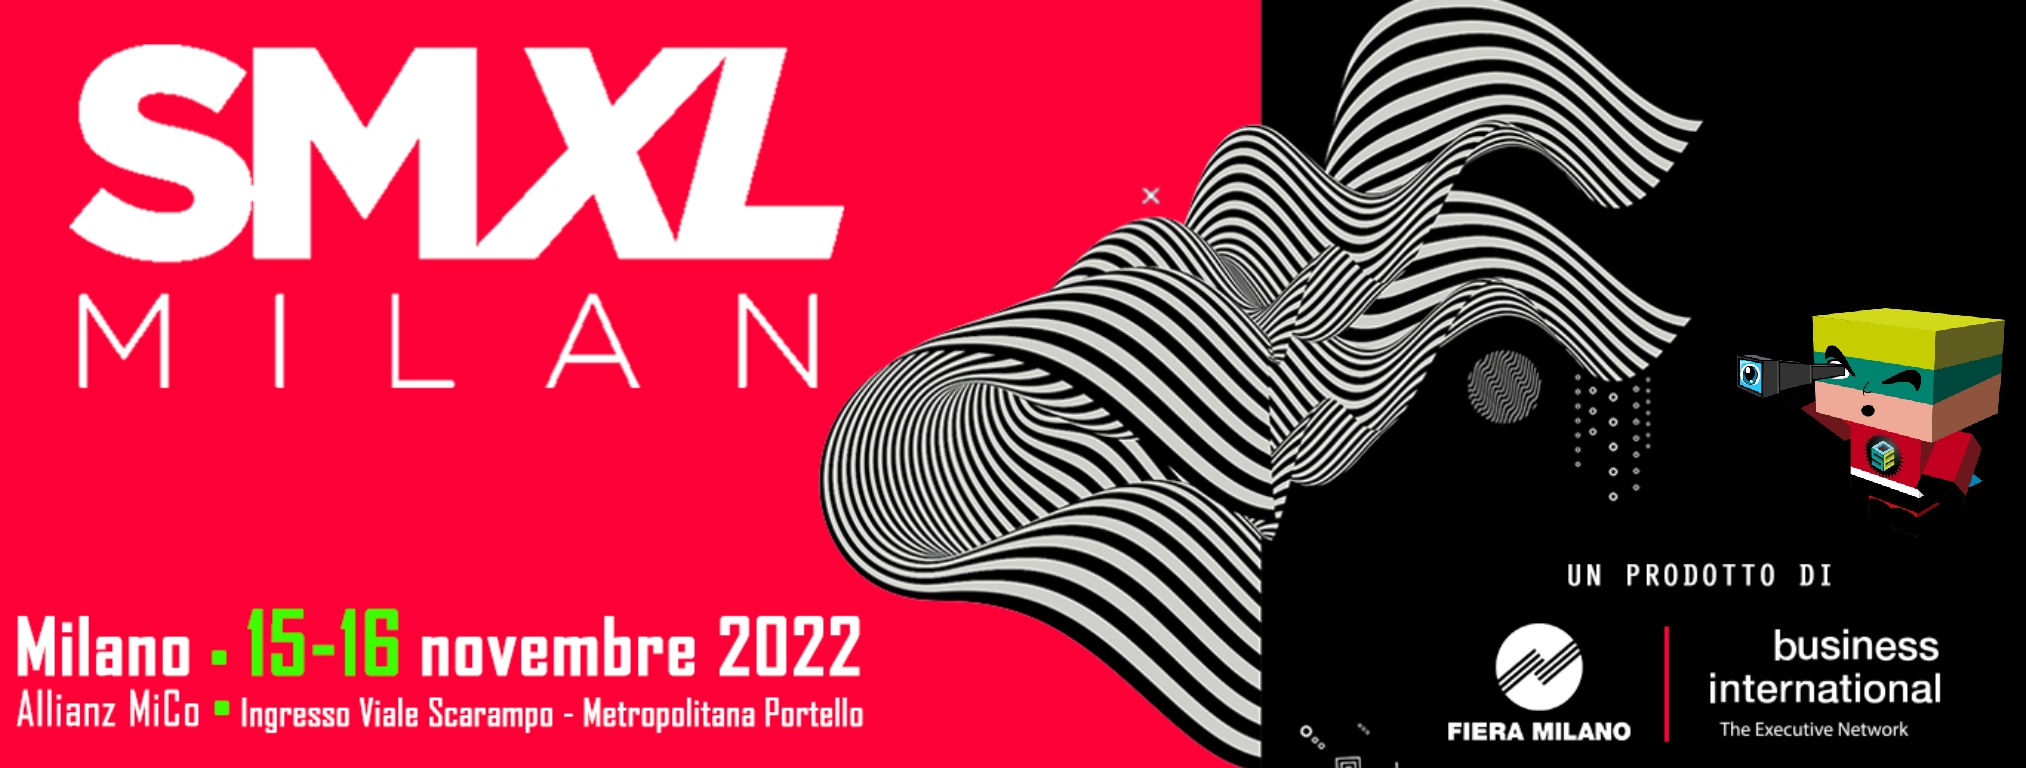 Informazioni sull'evento SMXL 22 a Milano